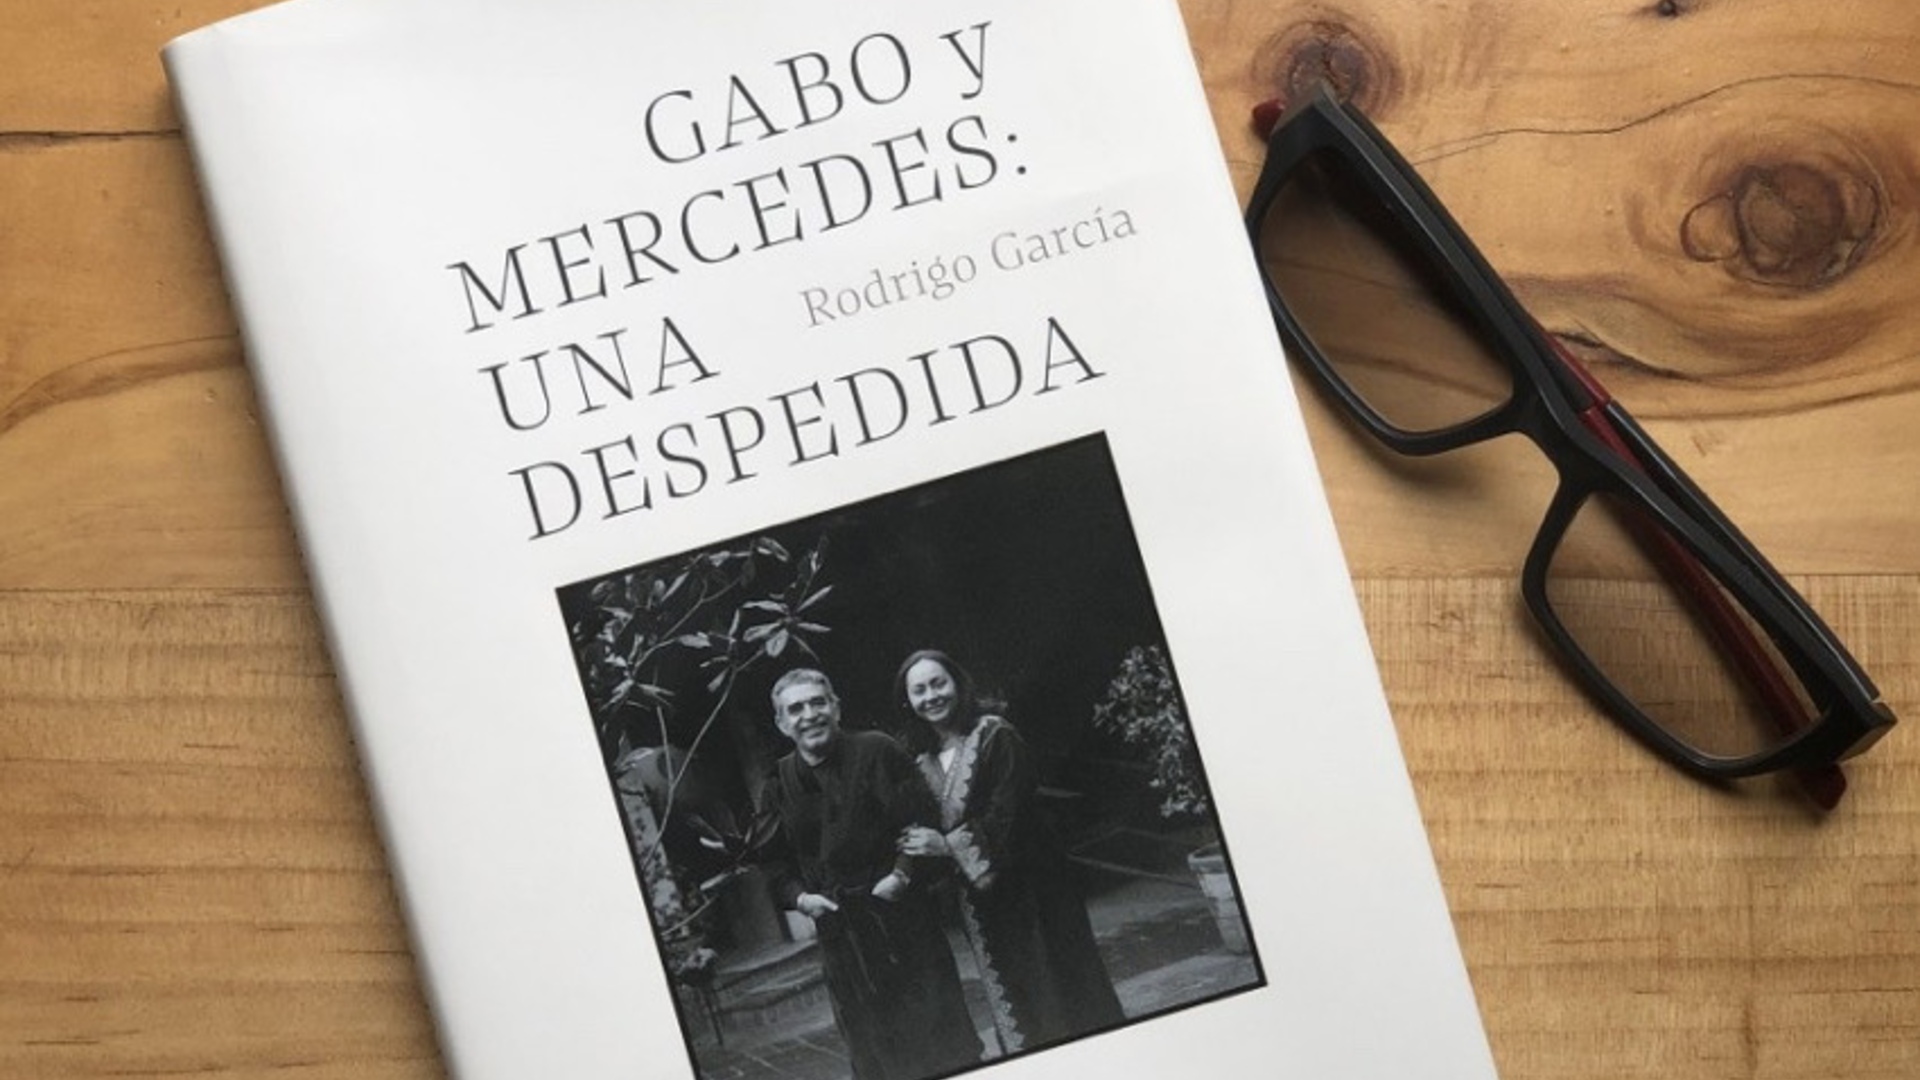 Gabo y Mercedes: una despedida - Rodrigo García